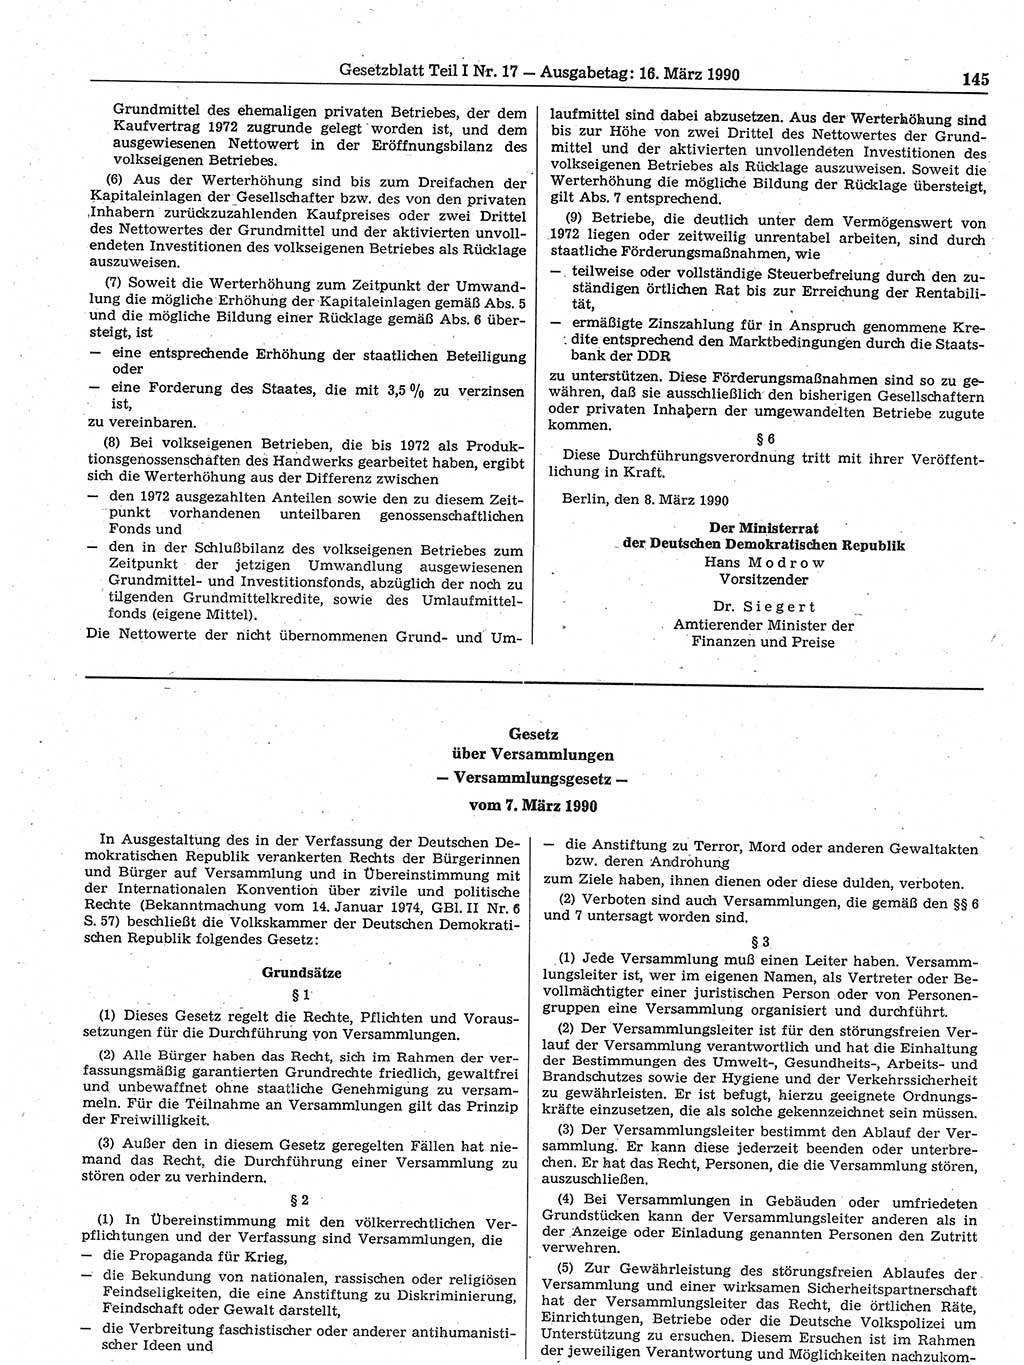 Gesetzblatt (GBl.) der Deutschen Demokratischen Republik (DDR) Teil Ⅰ 1990, Seite 145 (GBl. DDR Ⅰ 1990, S. 145)